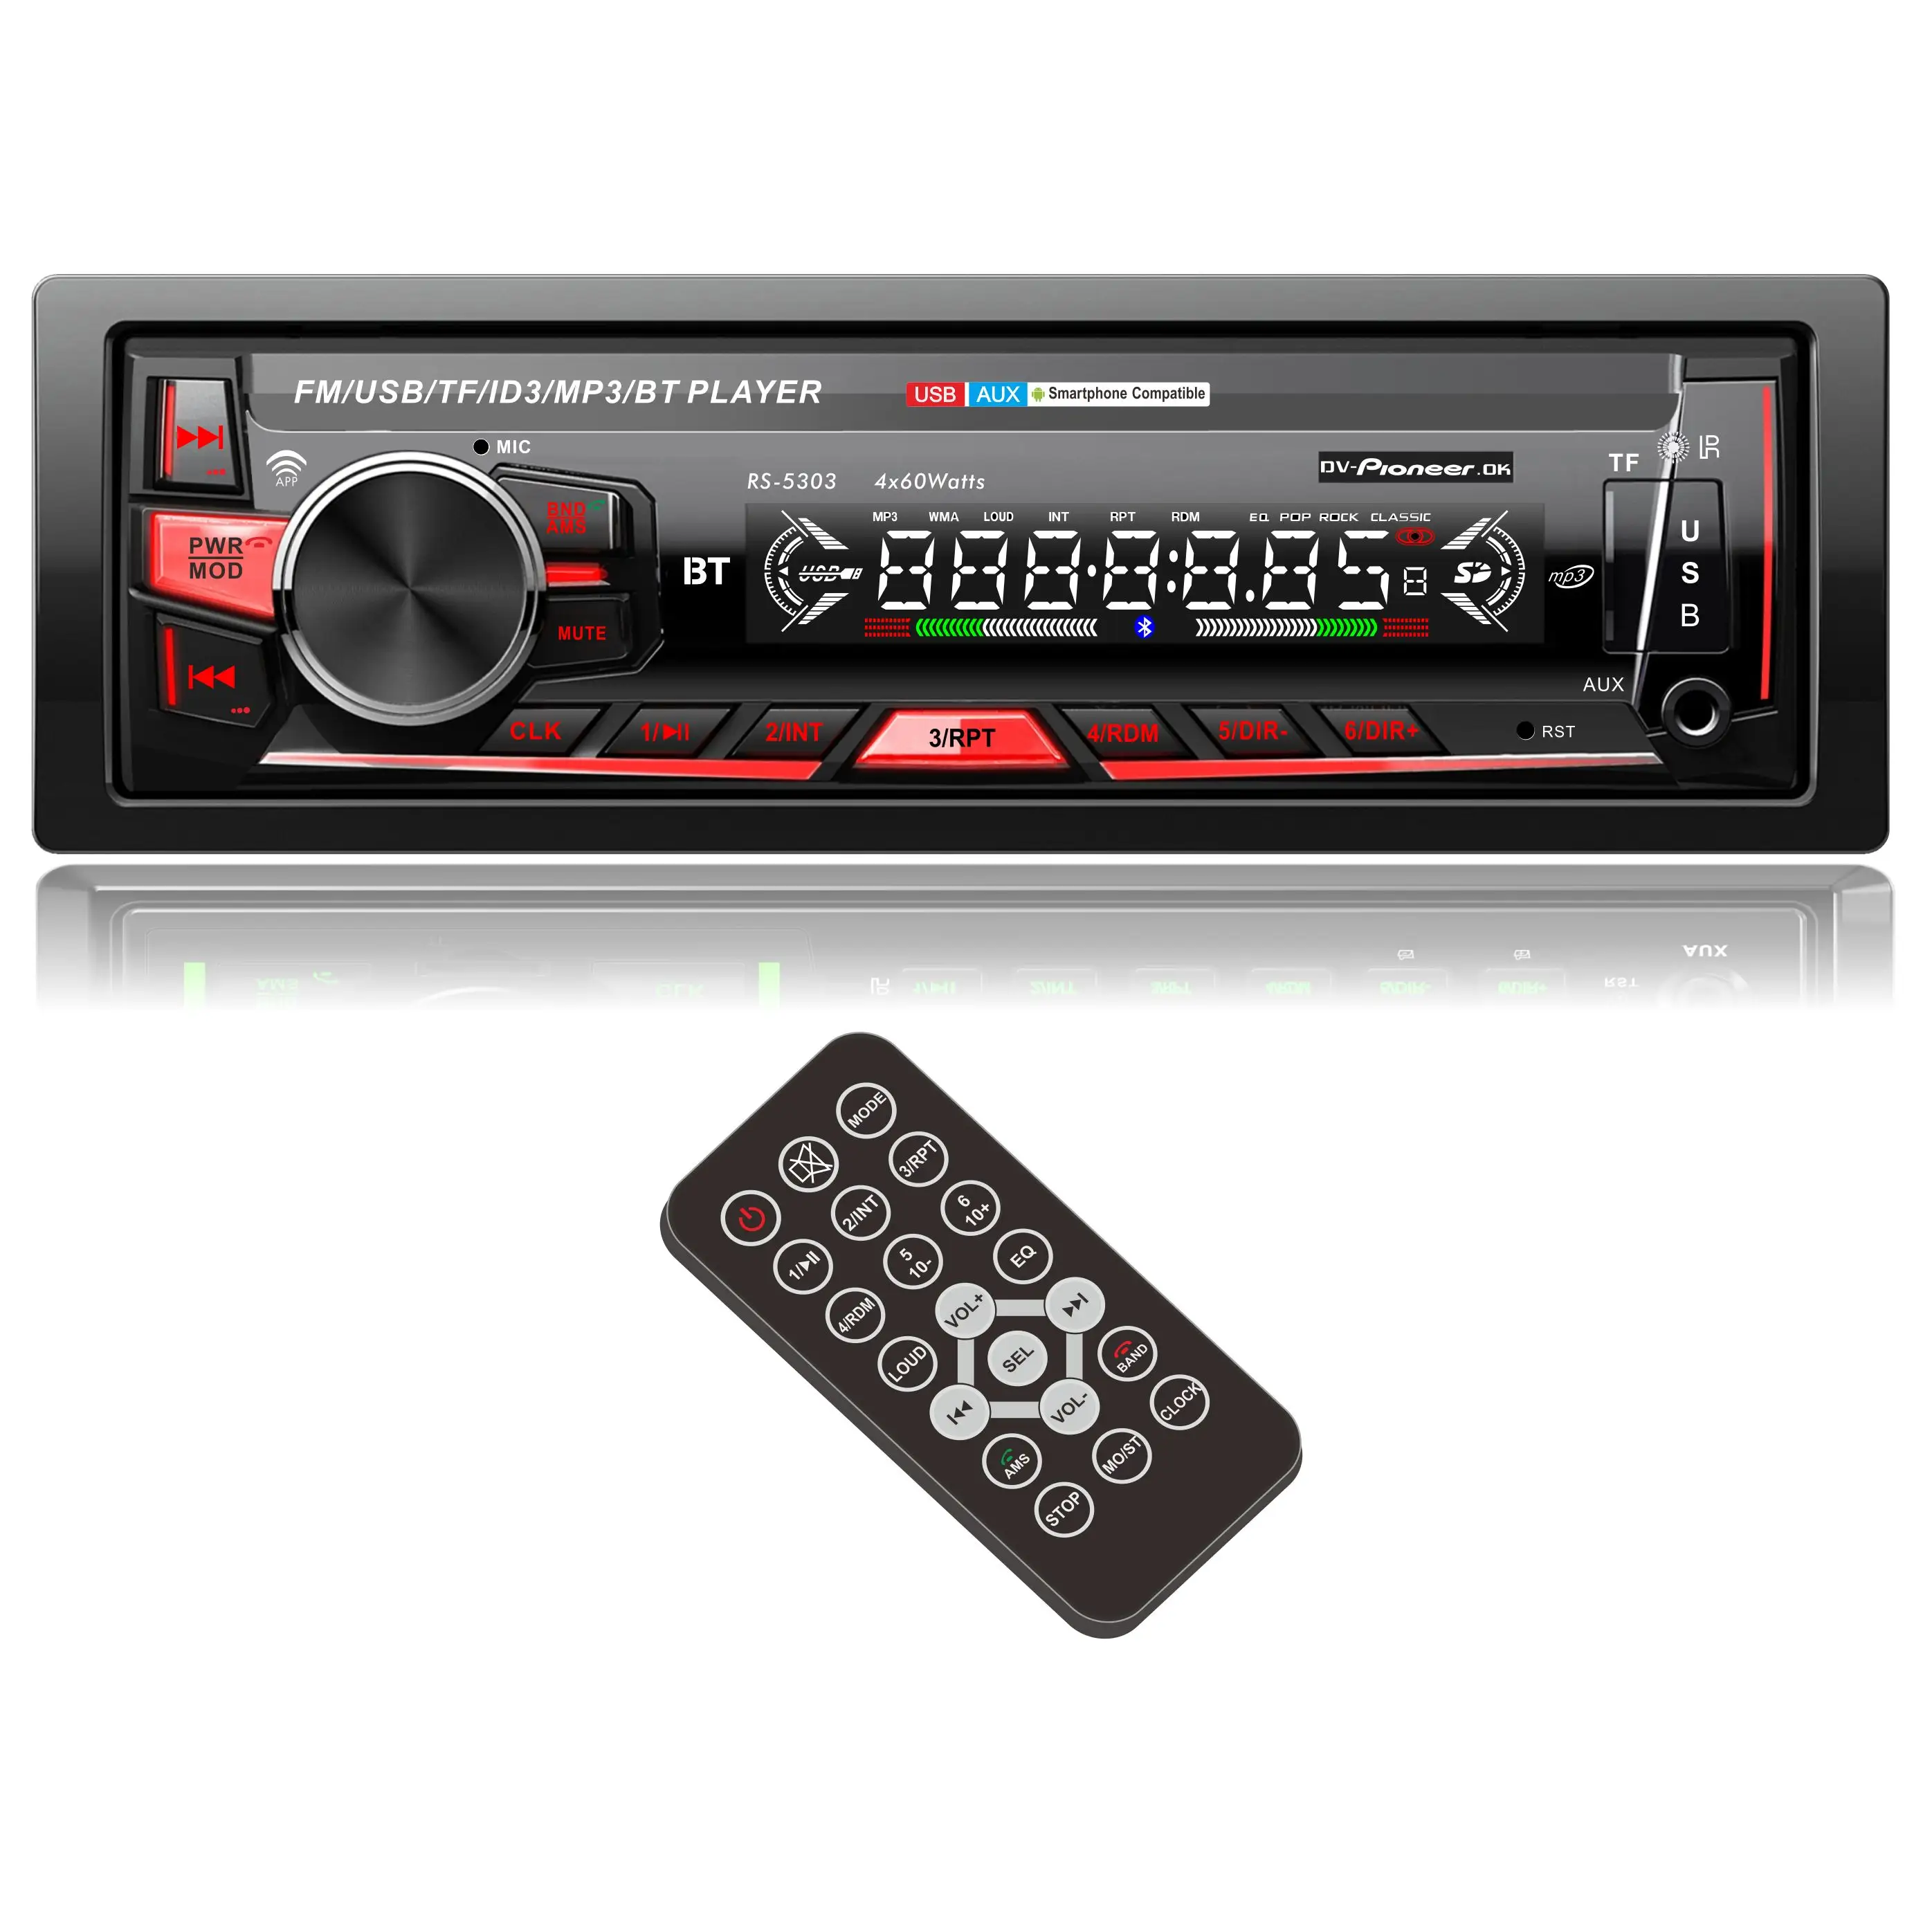 AboutBit araç Stereo ses radyo MP3 CD DVD MP5 alıcı